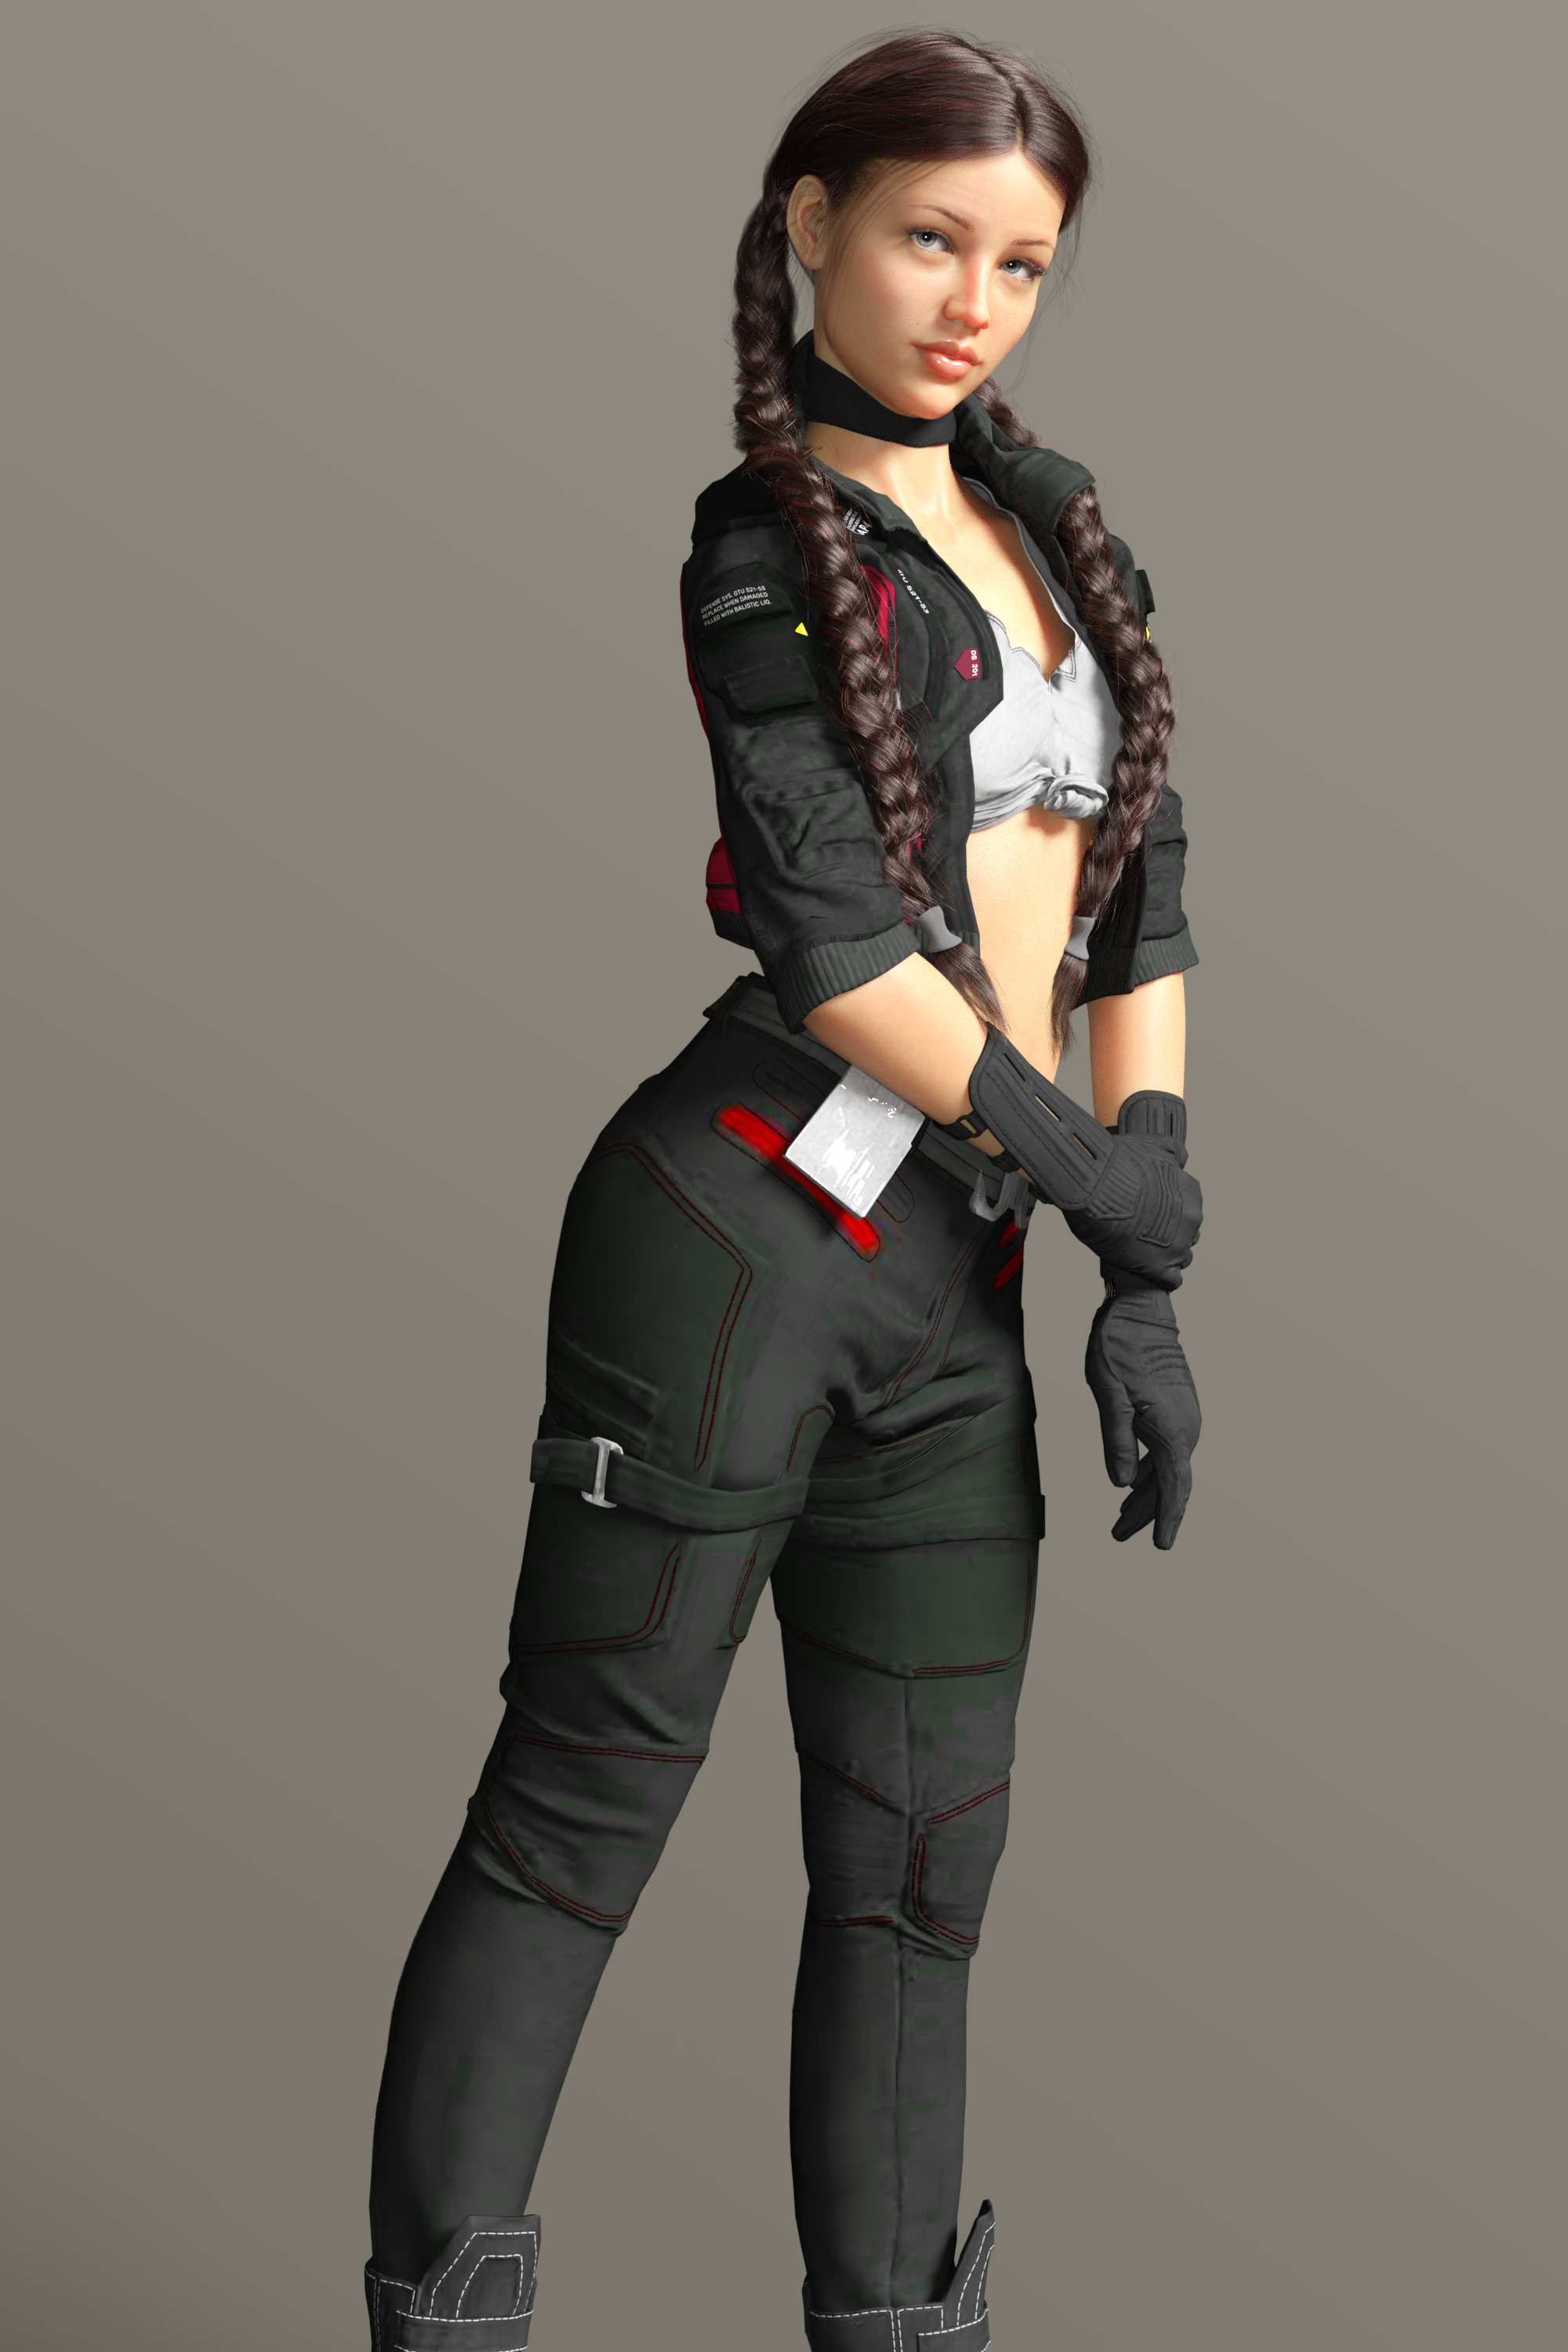 Gena in cyberpunk outfit by rkpcman on DeviantArt